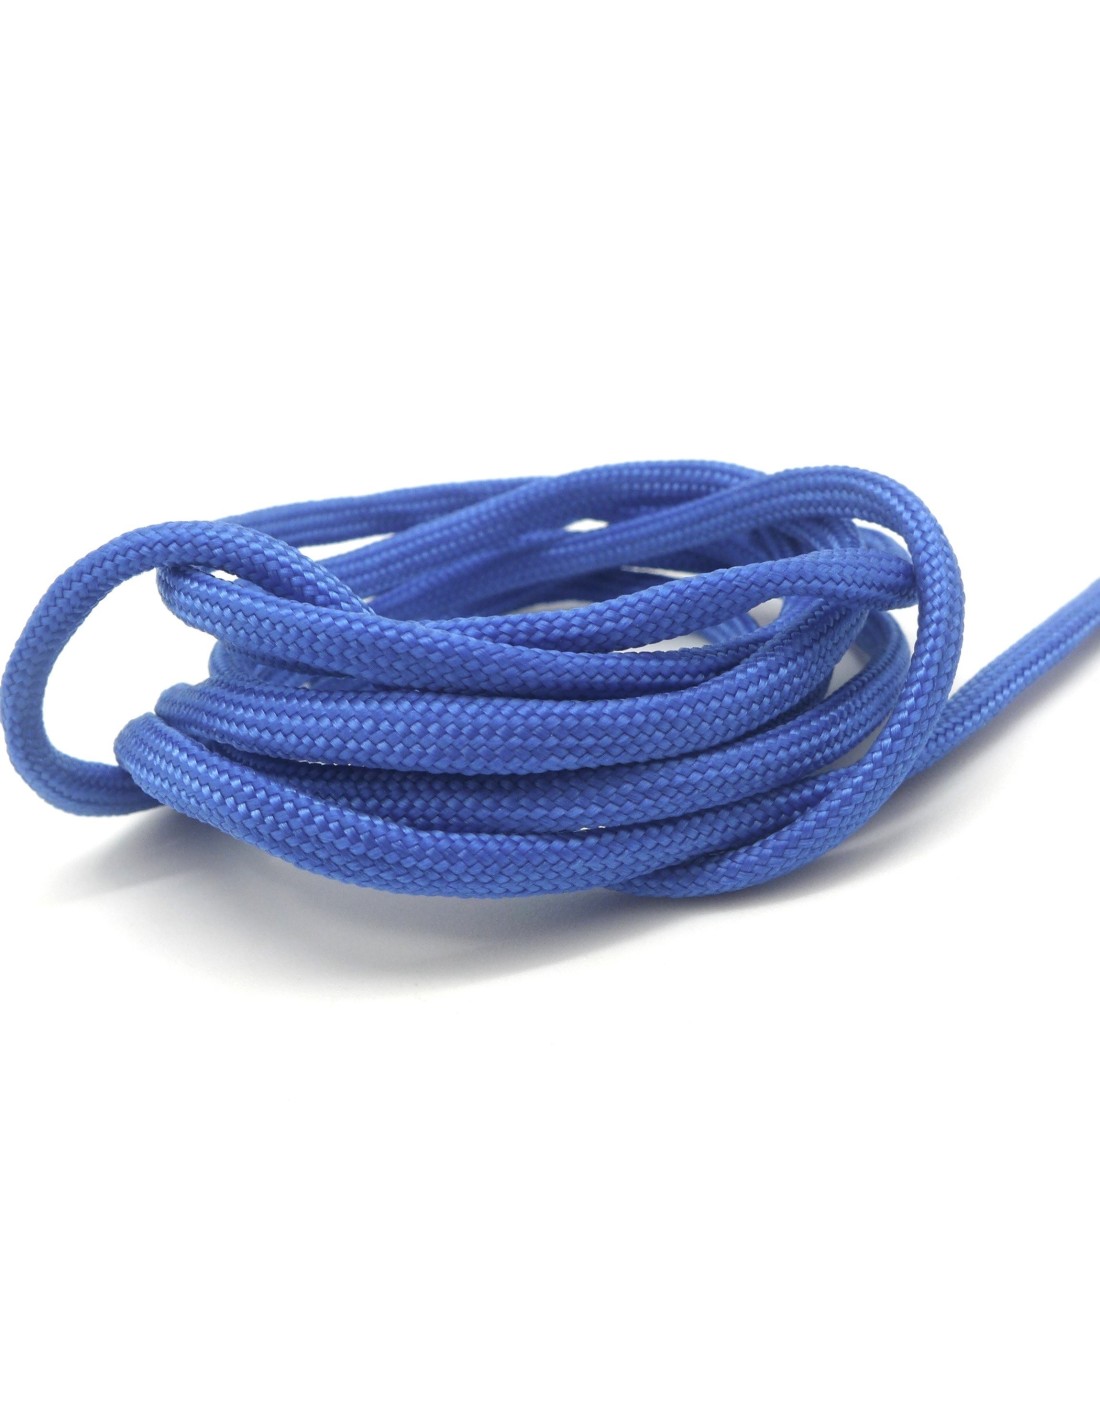 paracorde 3mm cordon tressé corde nylon gainé rouge bleu marine